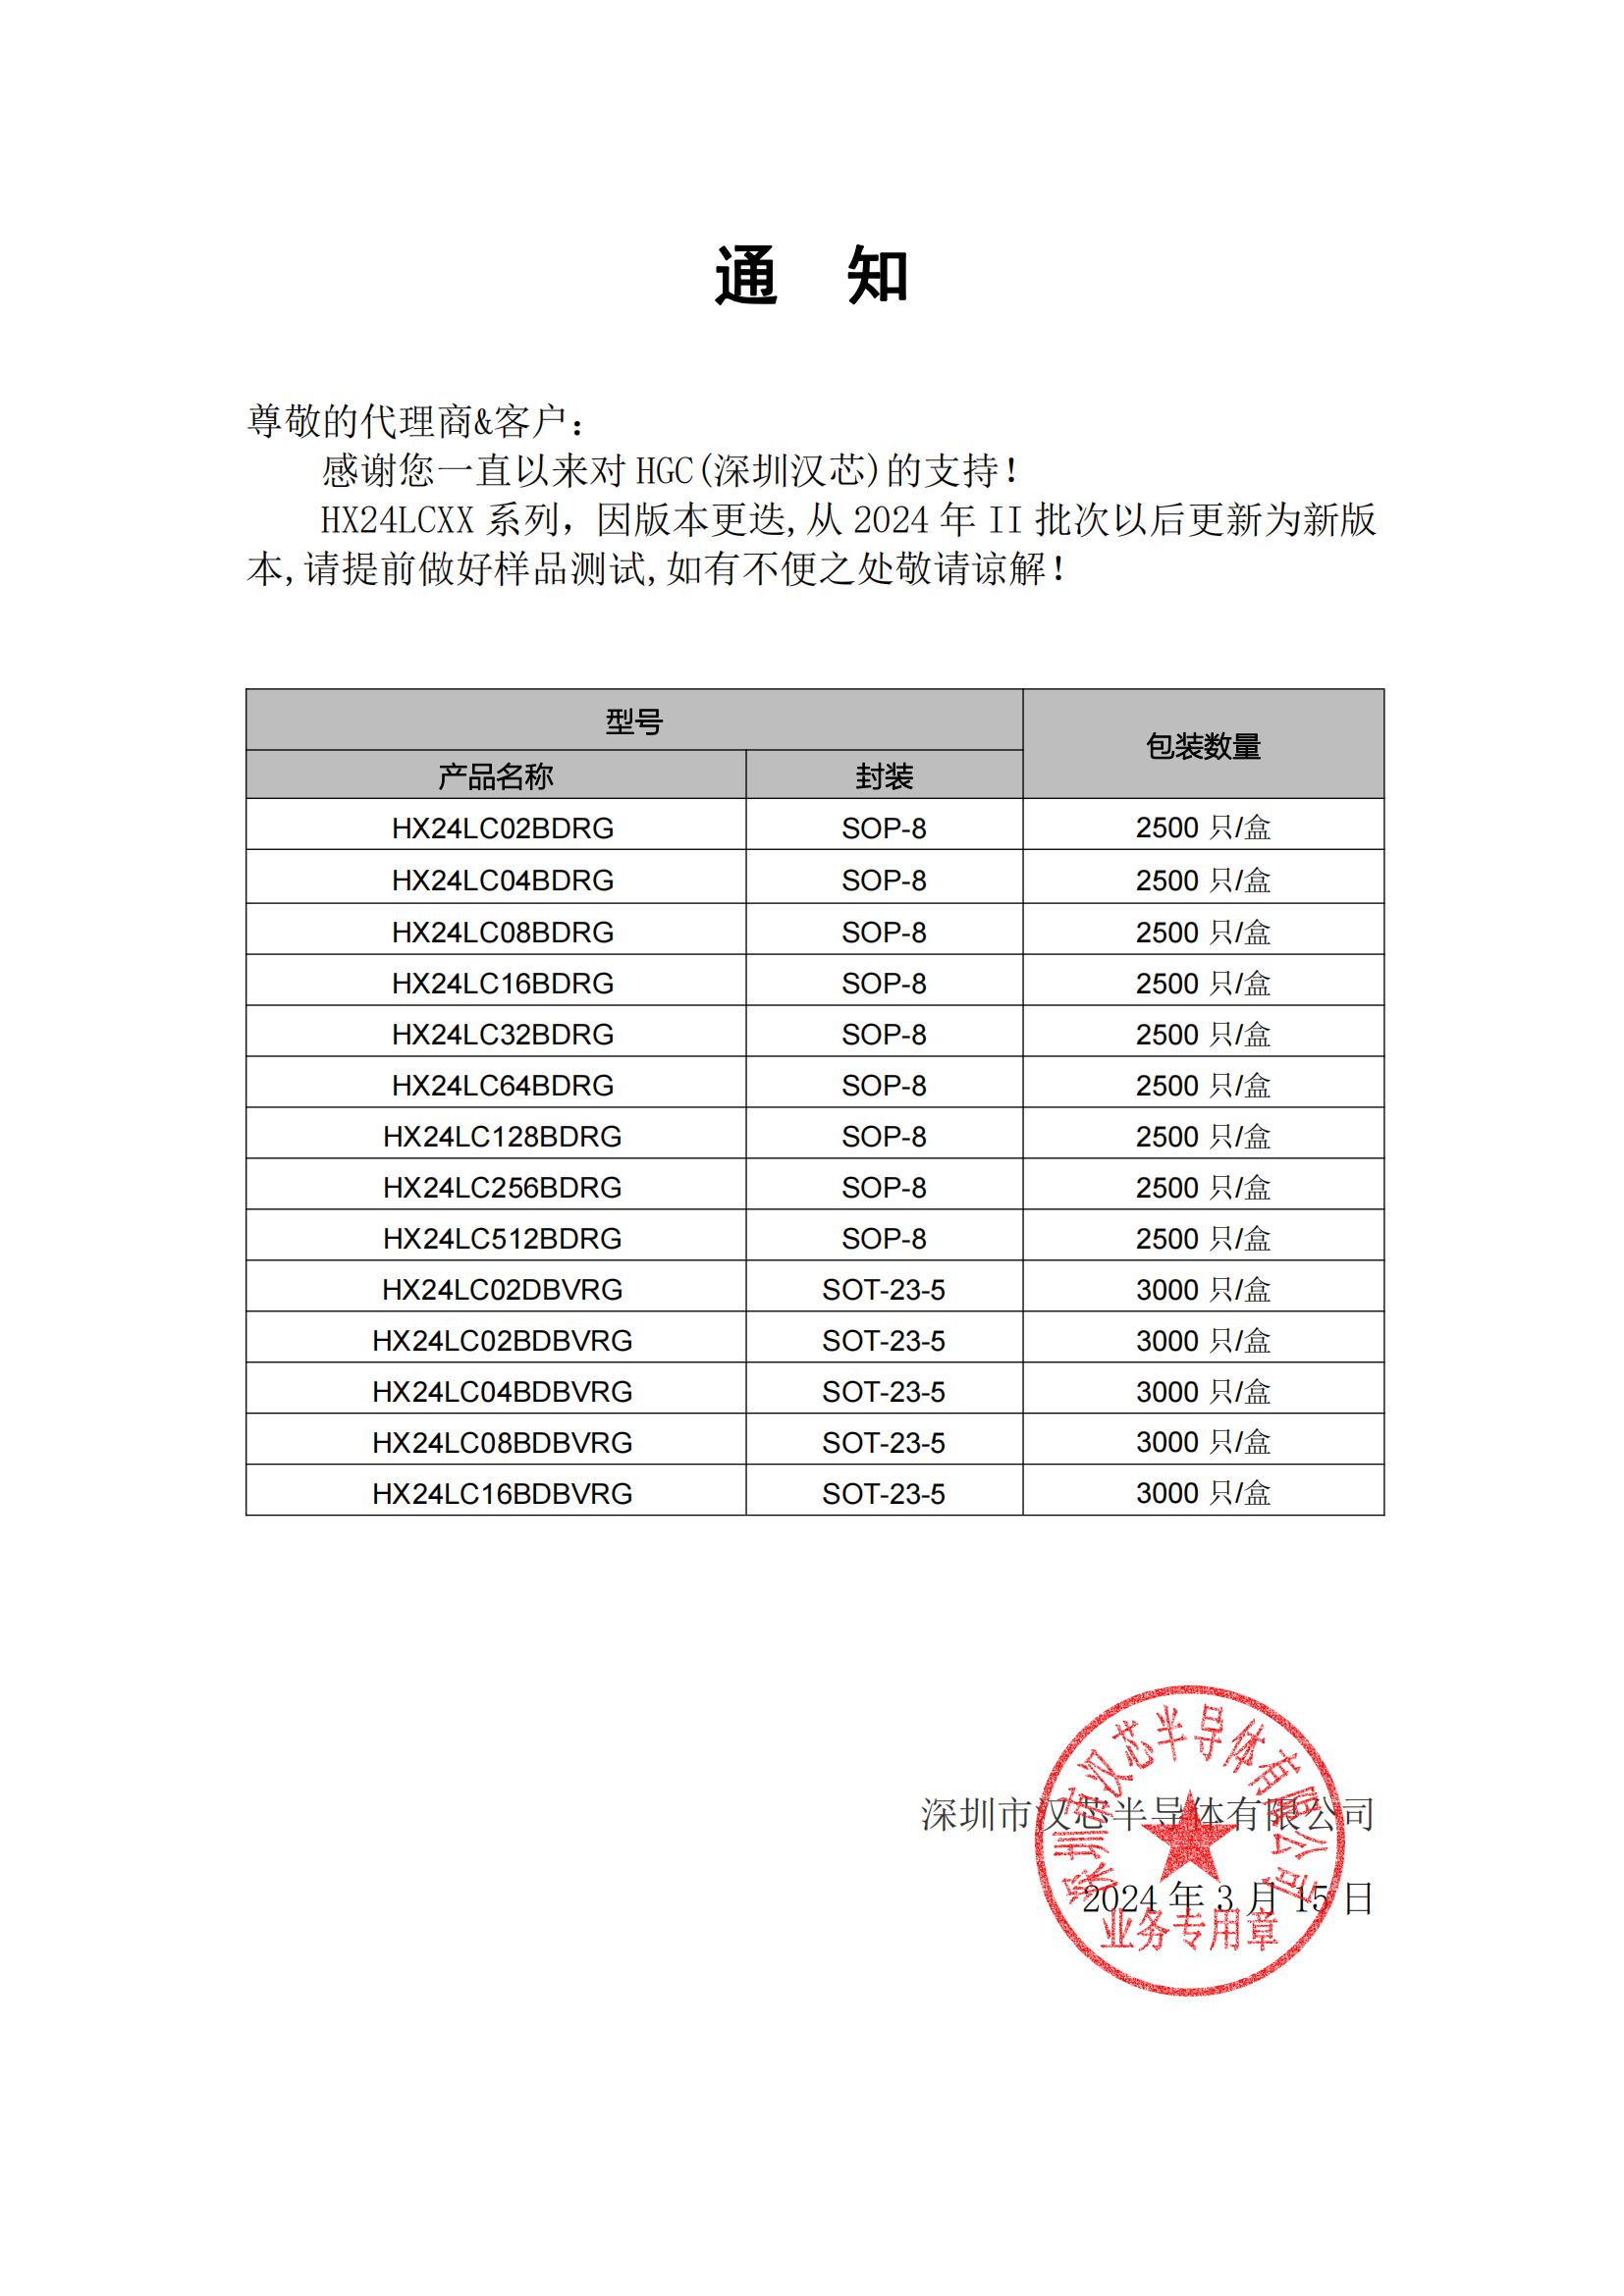 汉芯HX24LCXX系列系列通知函 2024-3-15_00.jpg